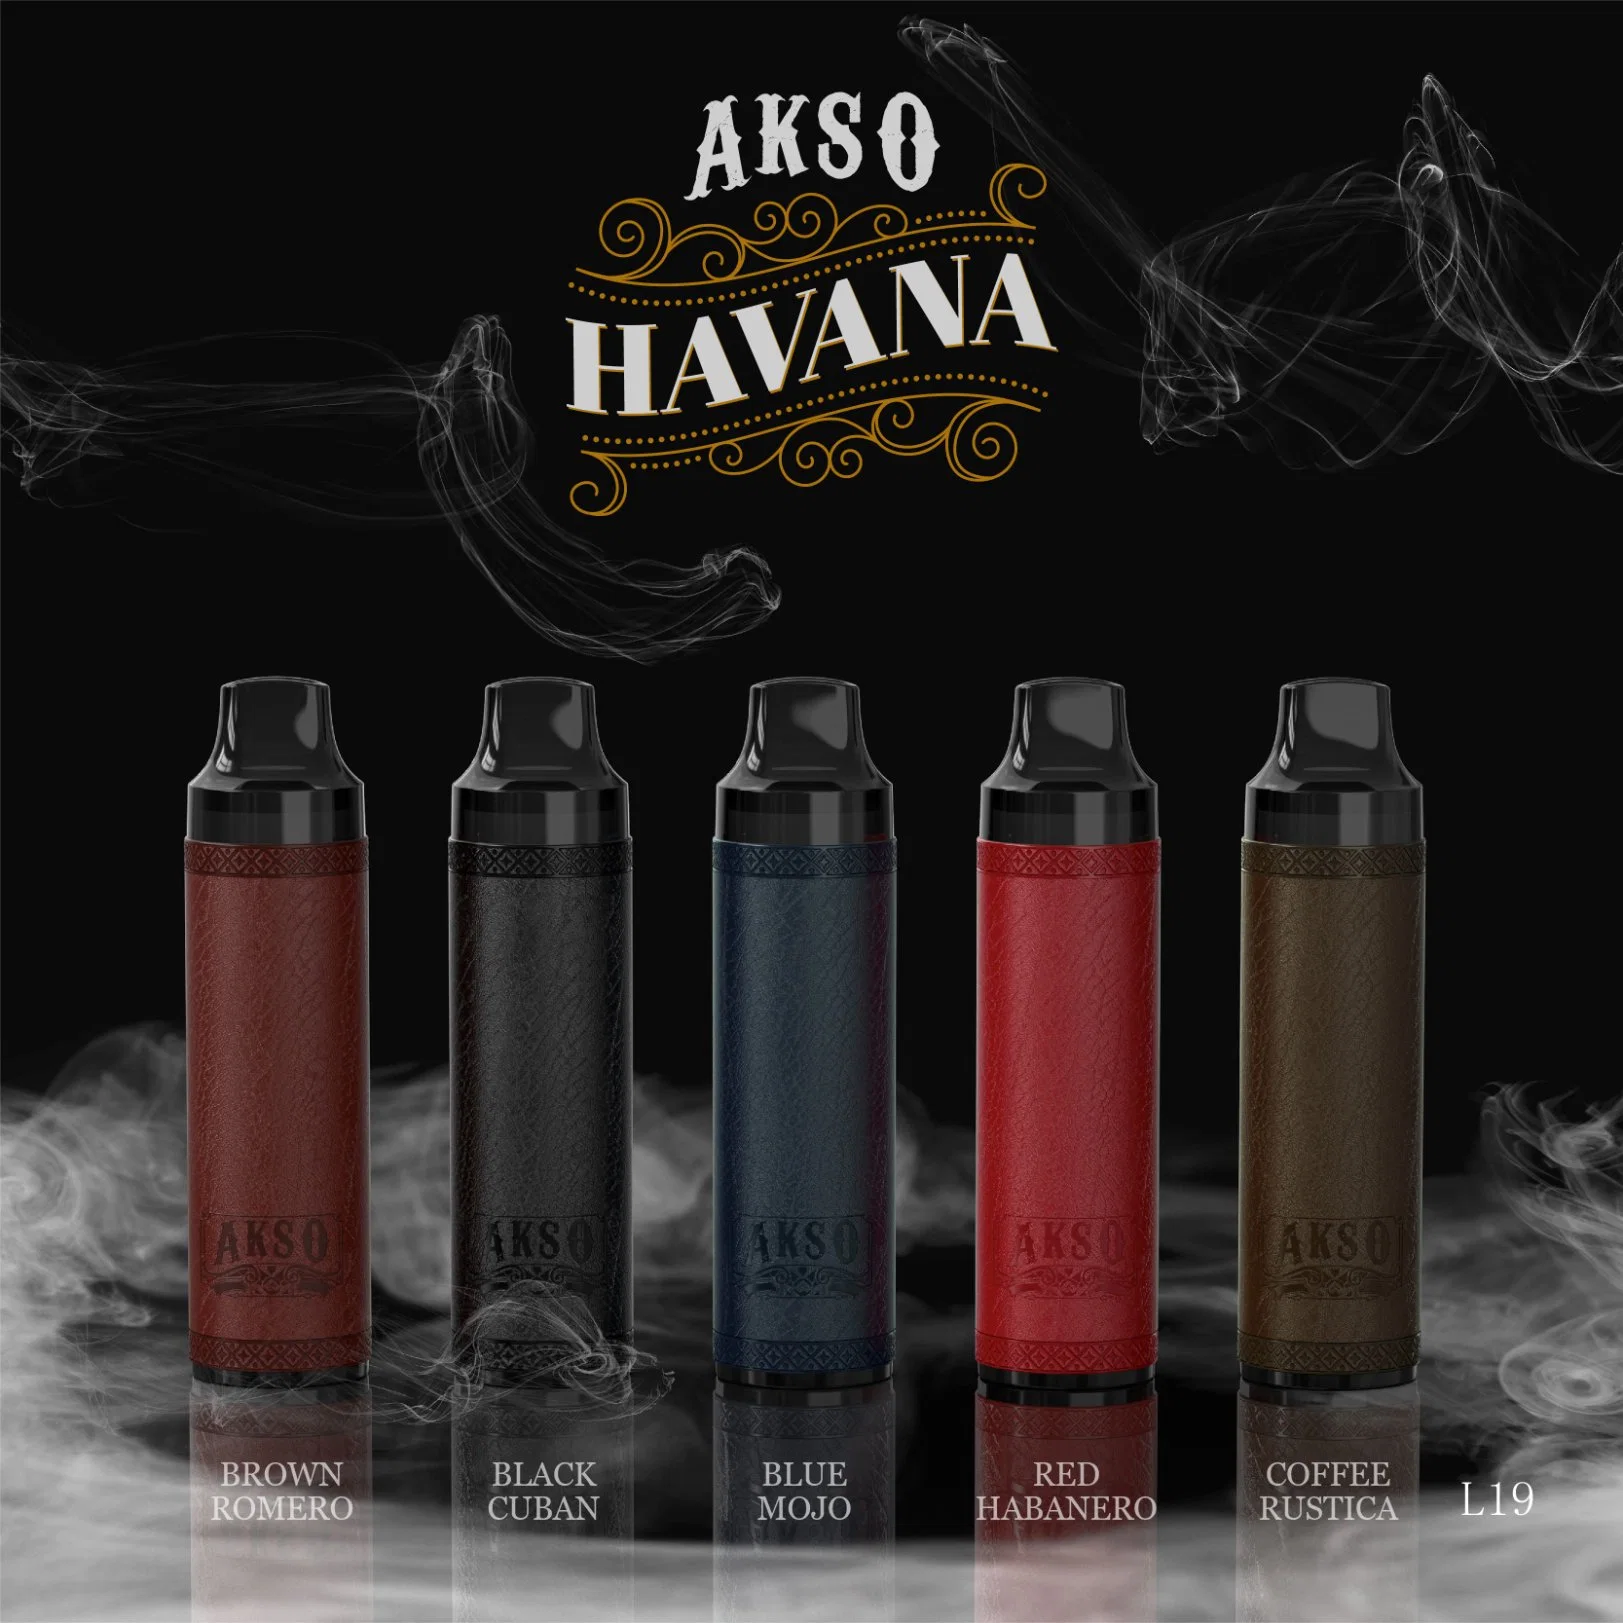 Hcigar 5000 Puffs Airflow Adjustable Disposable Electronic Cigarettes Factory Wholesale Price Akso Havana Disposable Vape Pen